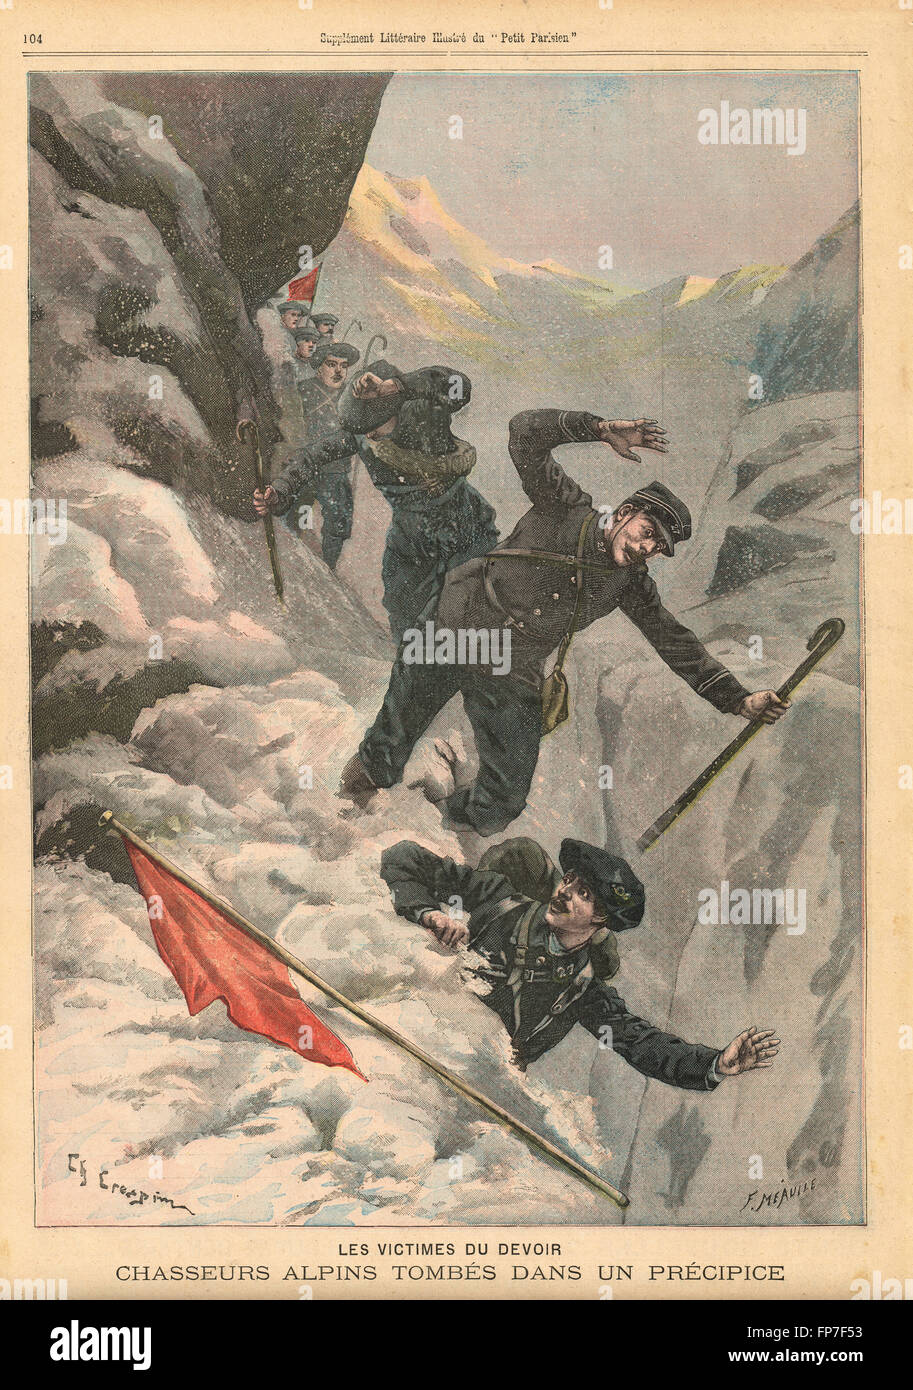 Chasseurs Alpins Alpini Französische Berg Infanterie fällt in den Abgrund Frankreich 1900. Französische illustrierte Zeitung Le Petit Parisien Illustration Stockfoto